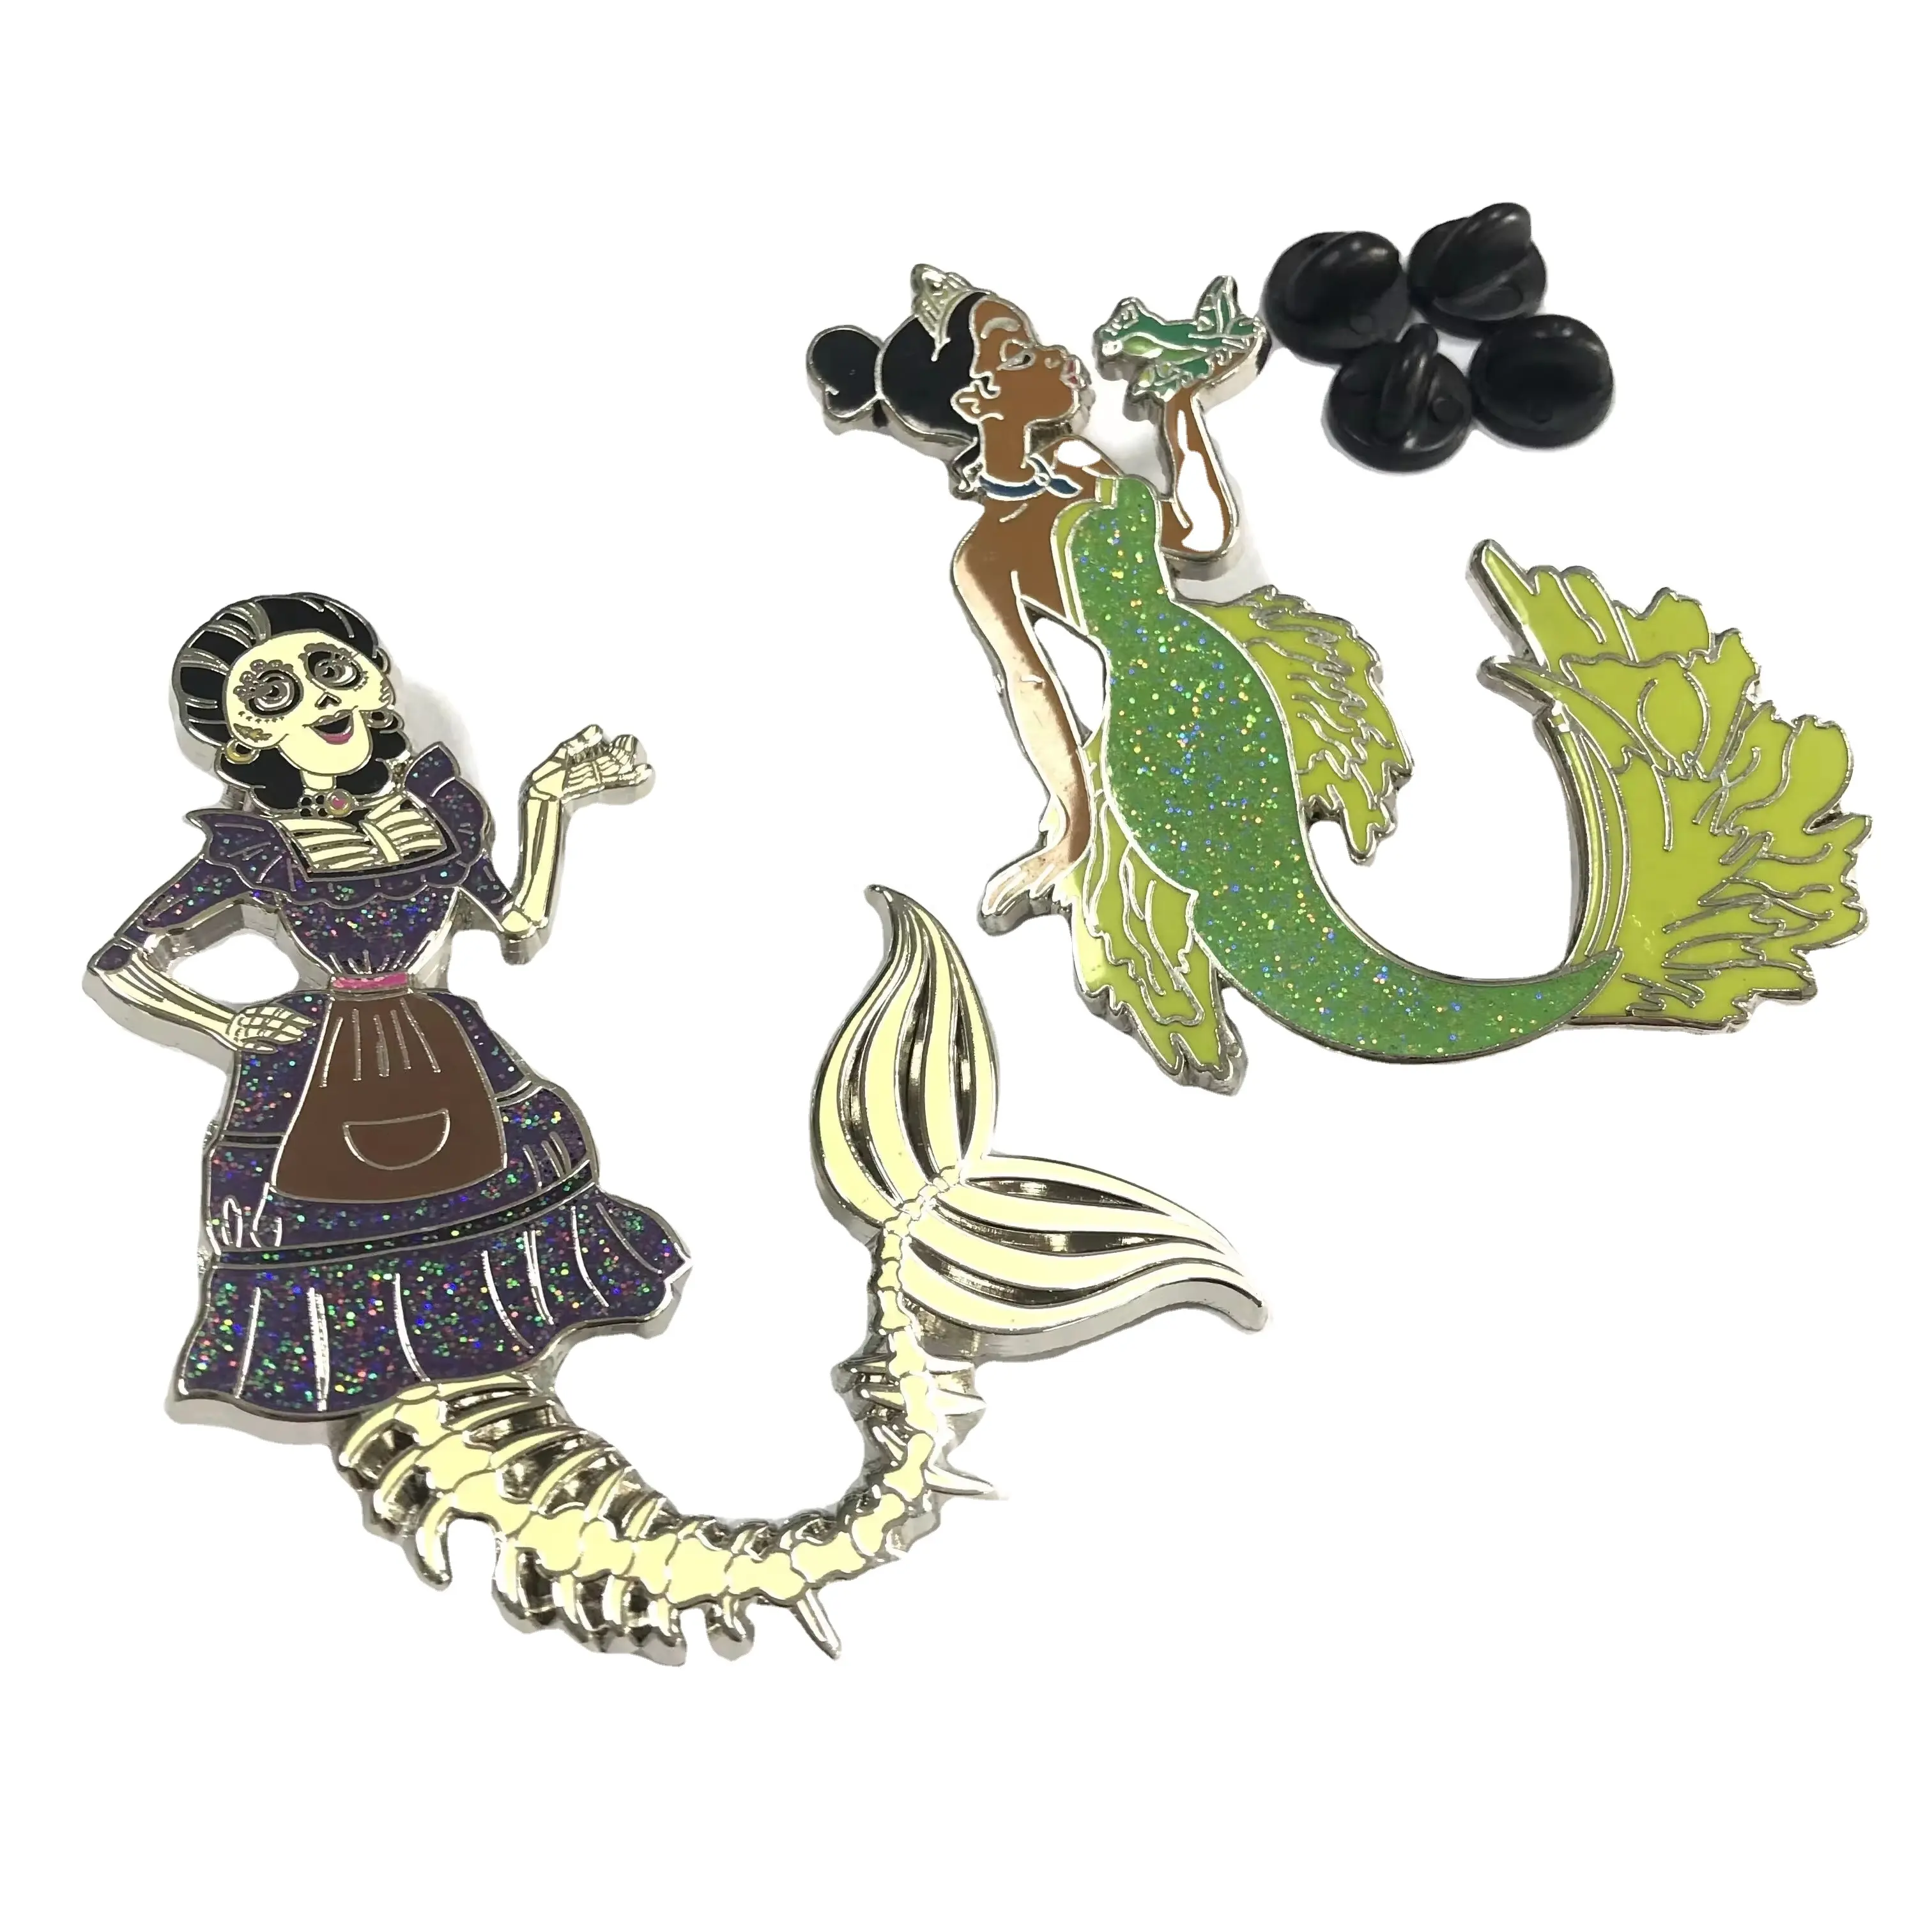 Offre Spéciale dessin animé sirène océan mignon animal épinglette badge en forme personnalisée métal émail broches paillettes broche pour souvenir